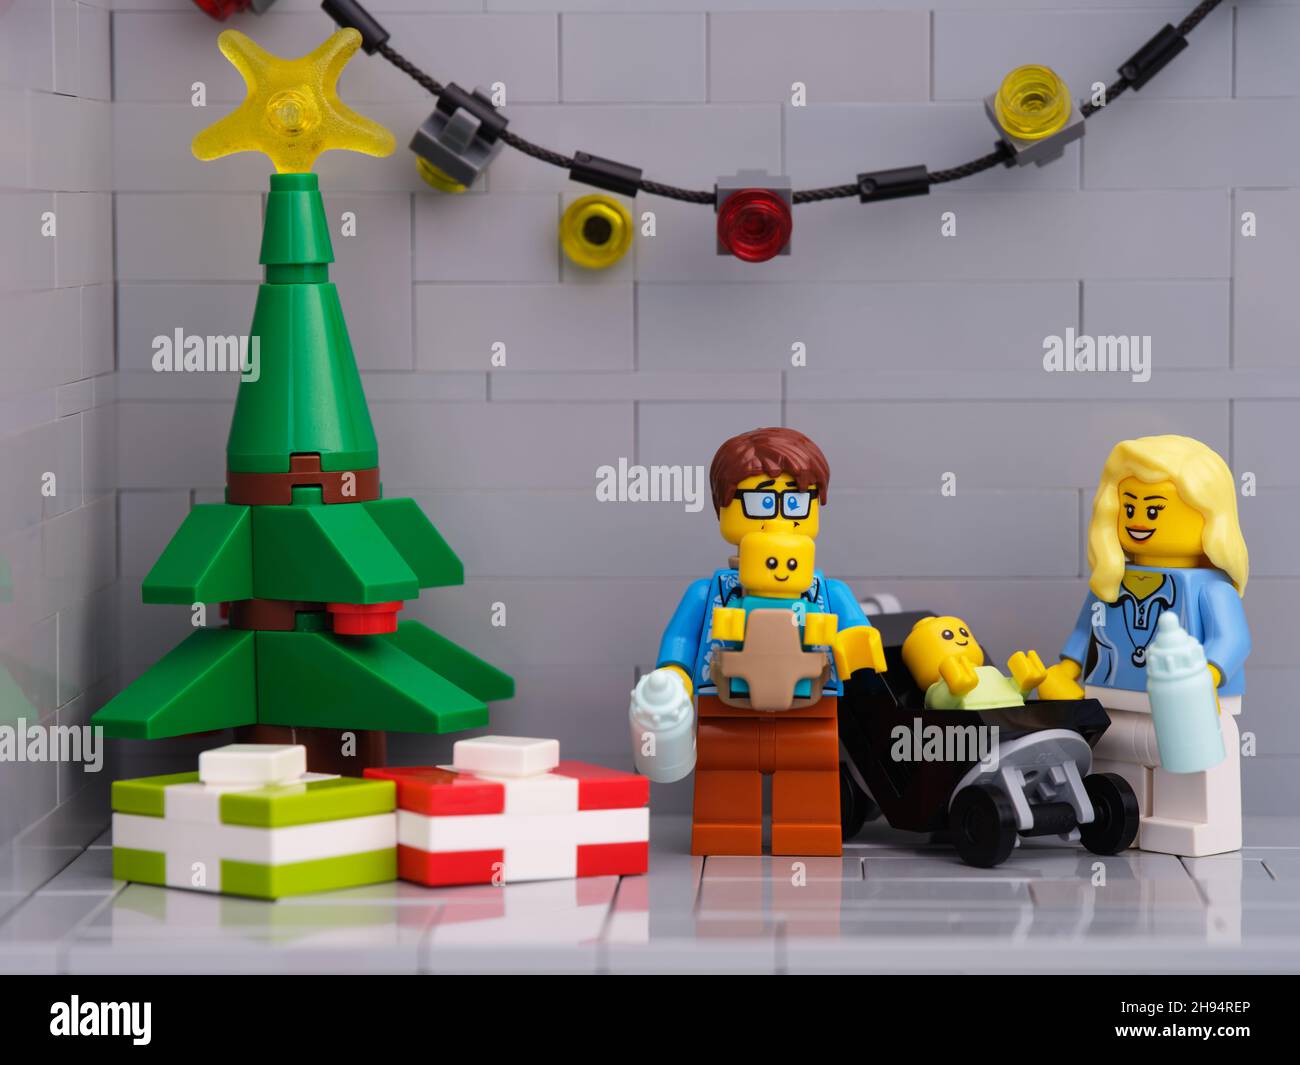 Tambow, Russische Föderation - 01. Dezember 2021 Eine Lego-Familie - Vater und Mutter mit zwei Babys minifiguren, die in der Nähe eines Weihnachtsbaums stehen, der p hat Stockfoto